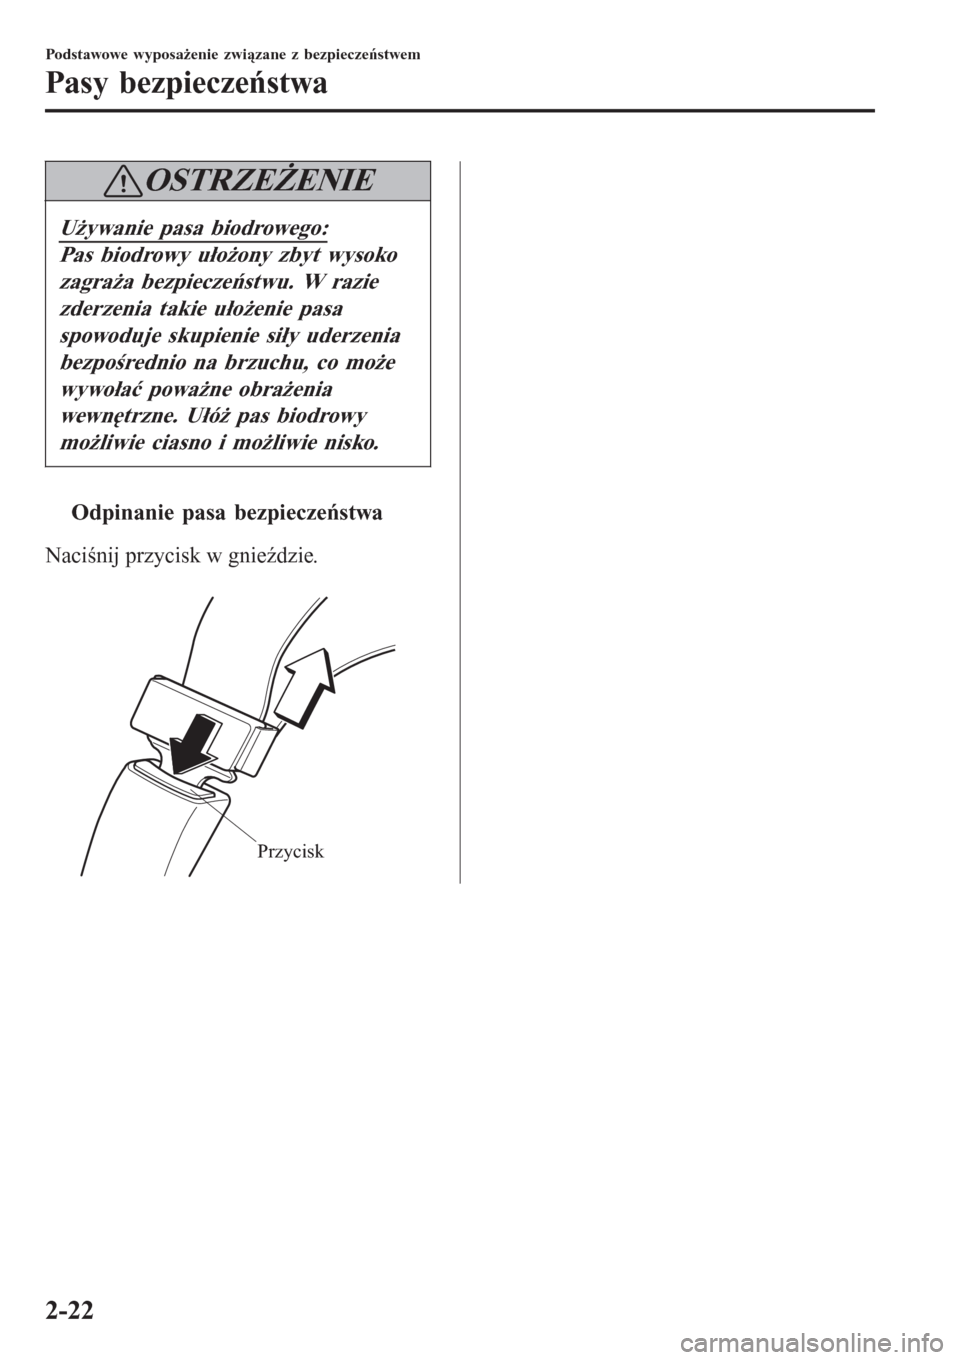 MAZDA MODEL CX-3 2015  Instrukcja Obsługi (in Polish) OSTRZEŻENIE
Używanie pasa biodrowego:
Pas biodrowy ułożony zbyt wysoko
zagraża bezpieczeństwu. W razie
zderzenia takie ułożenie pasa
spowoduje skupienie siły uderzenia
bezpośrednio na brzuch